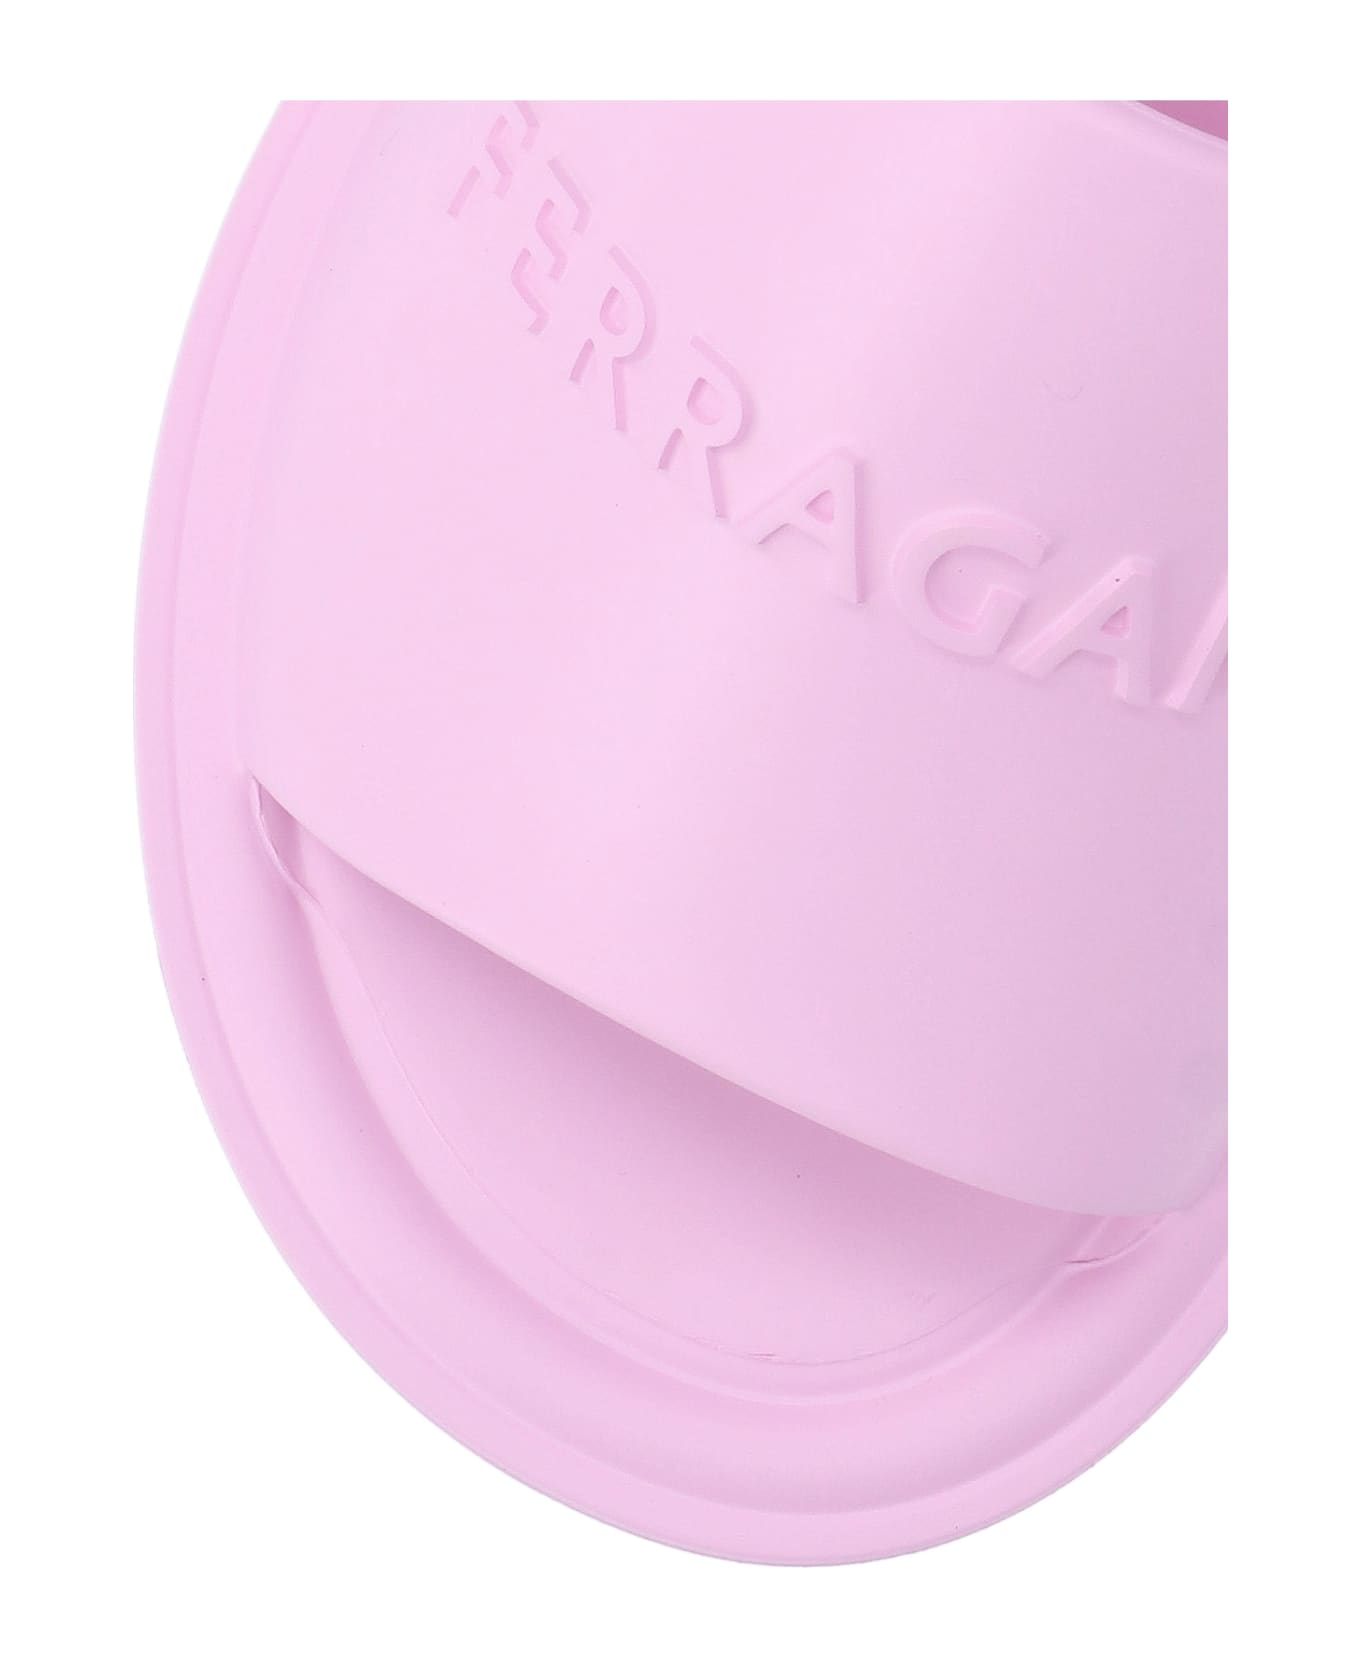 Ferragamo Logo Sandals - Pink サンダル